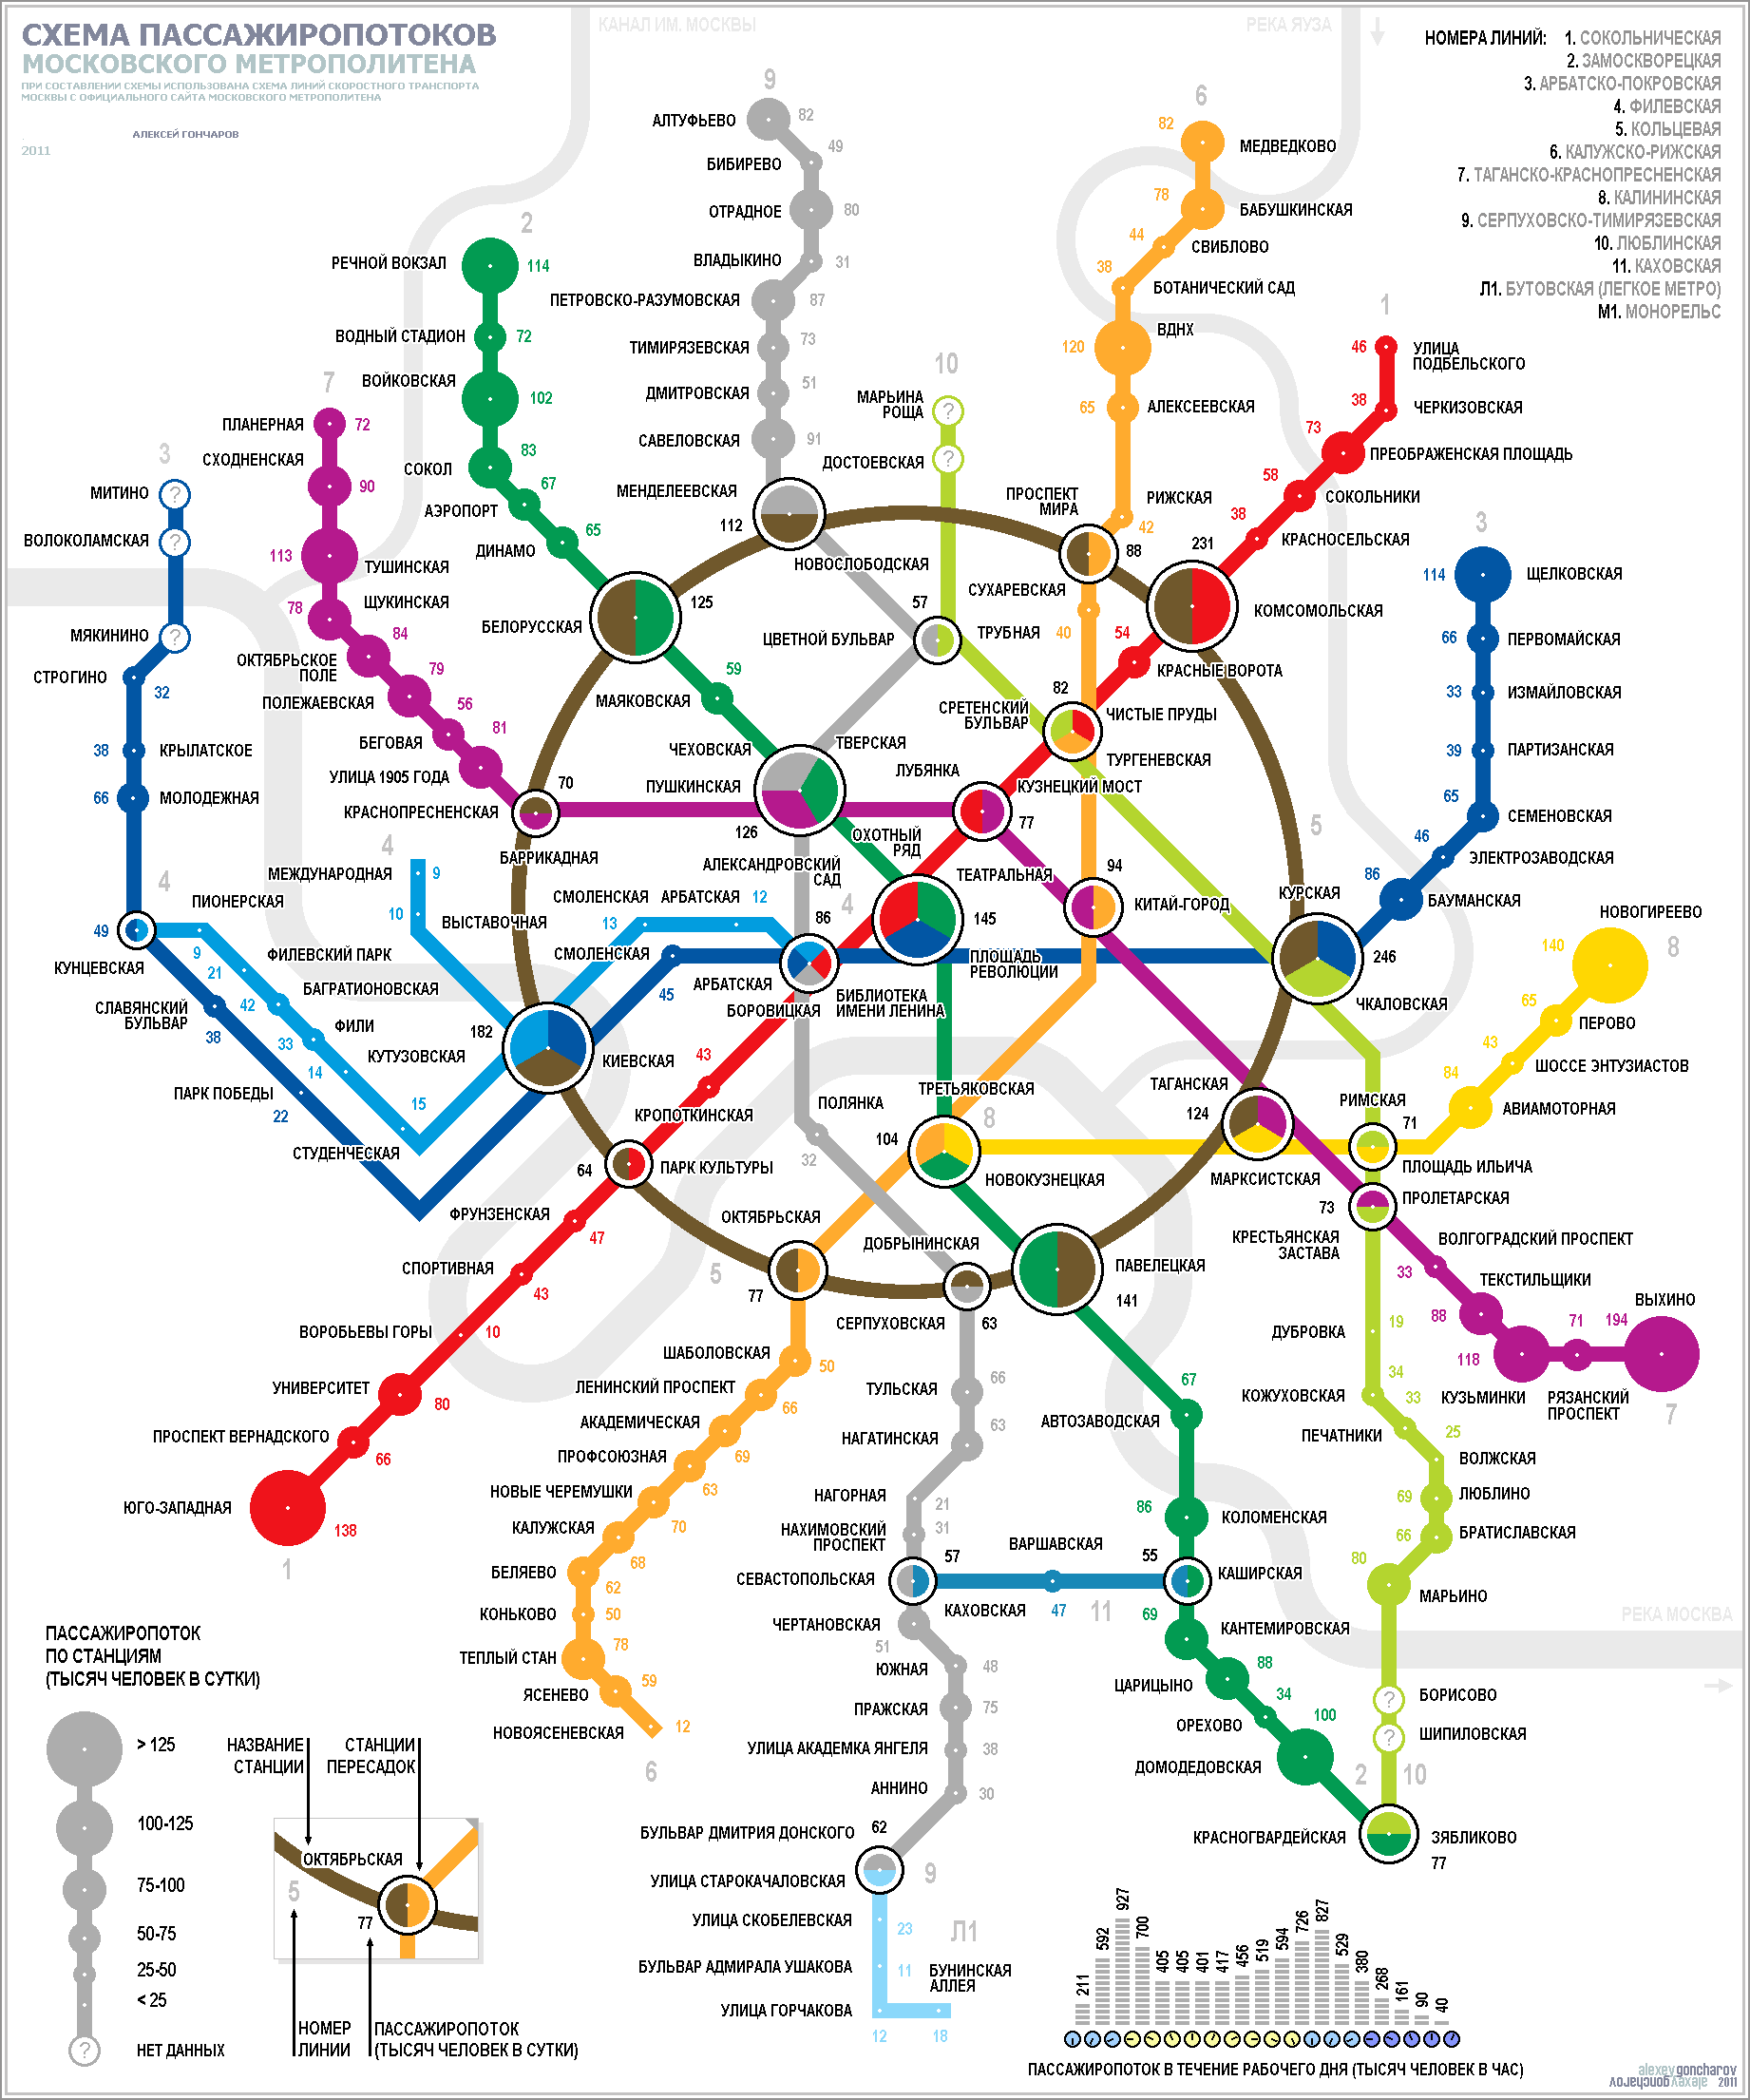 Схема пассажиропотоков московского метрополитена